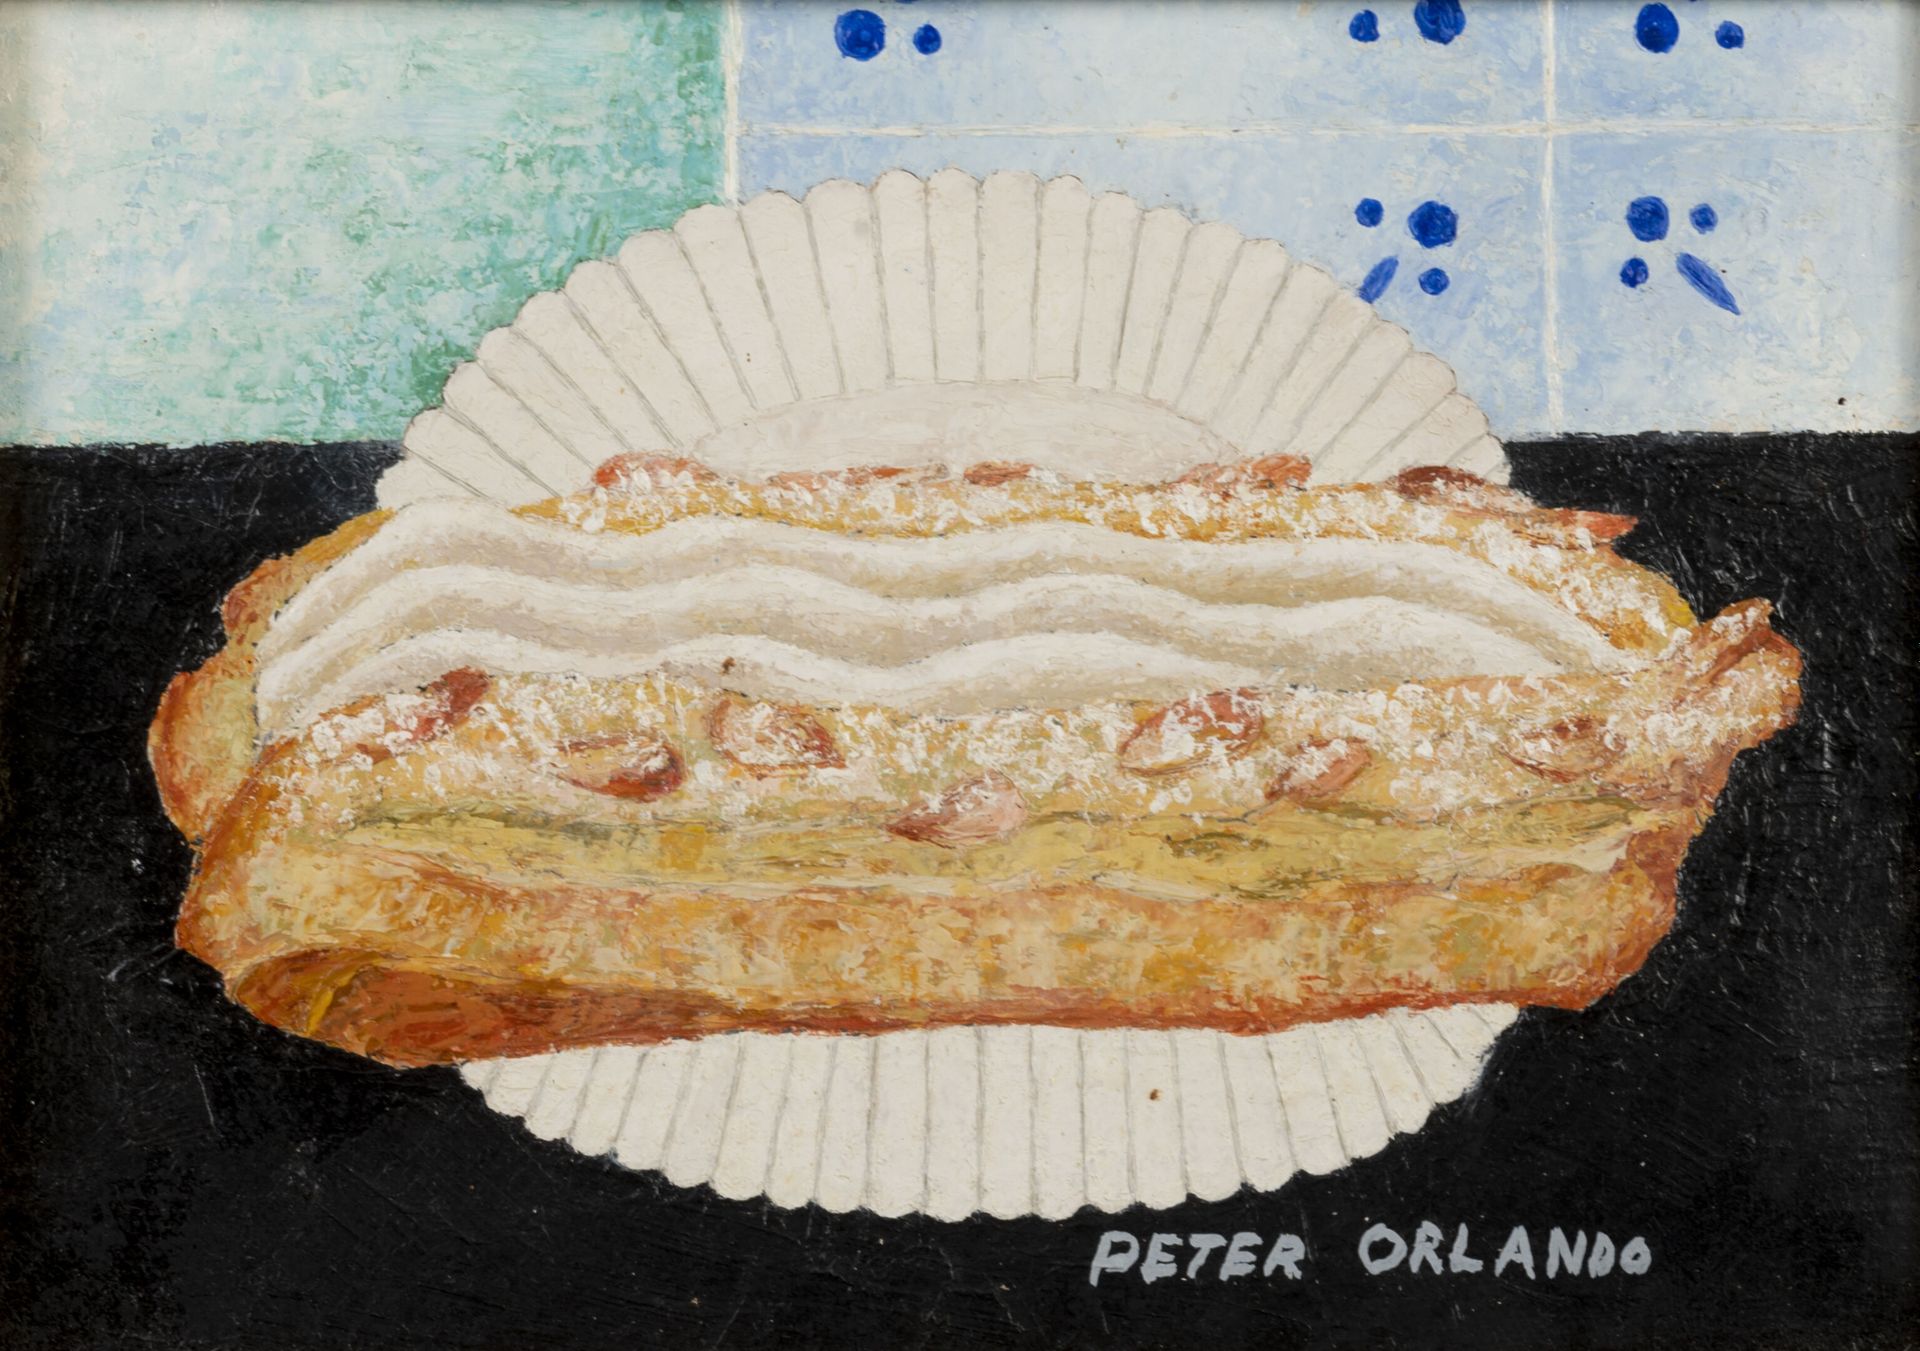 Peter ORLANDO (1921-2009) 无题。

布面油画。

右下方有签名。

16 x 22厘米。

小污点和裂缝。